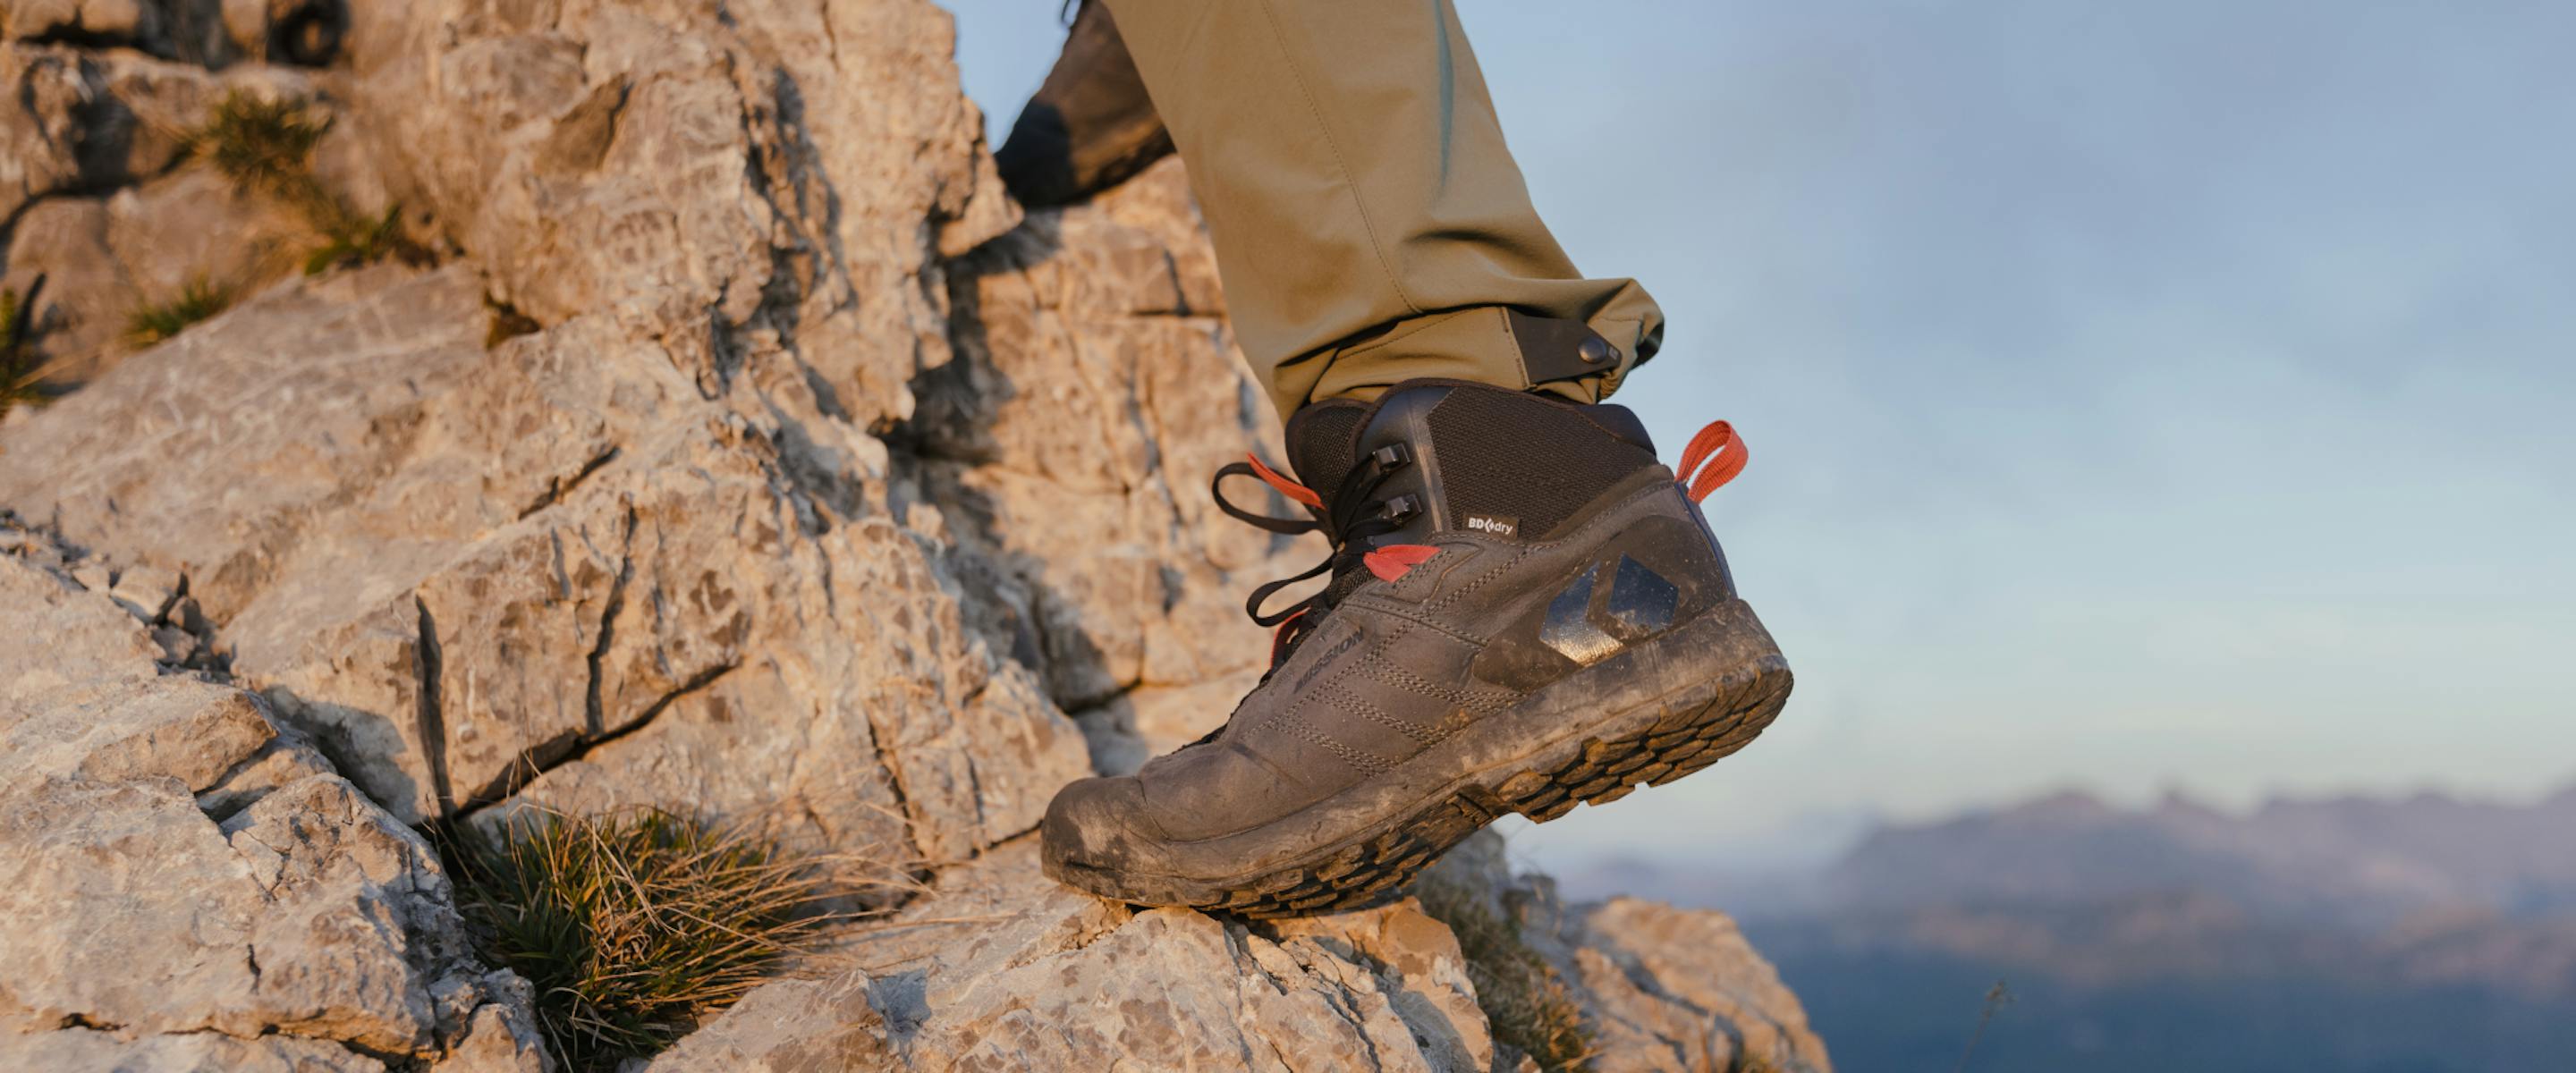 Climbing, Approach & Trekking Shoes | Black Diamond Equipment